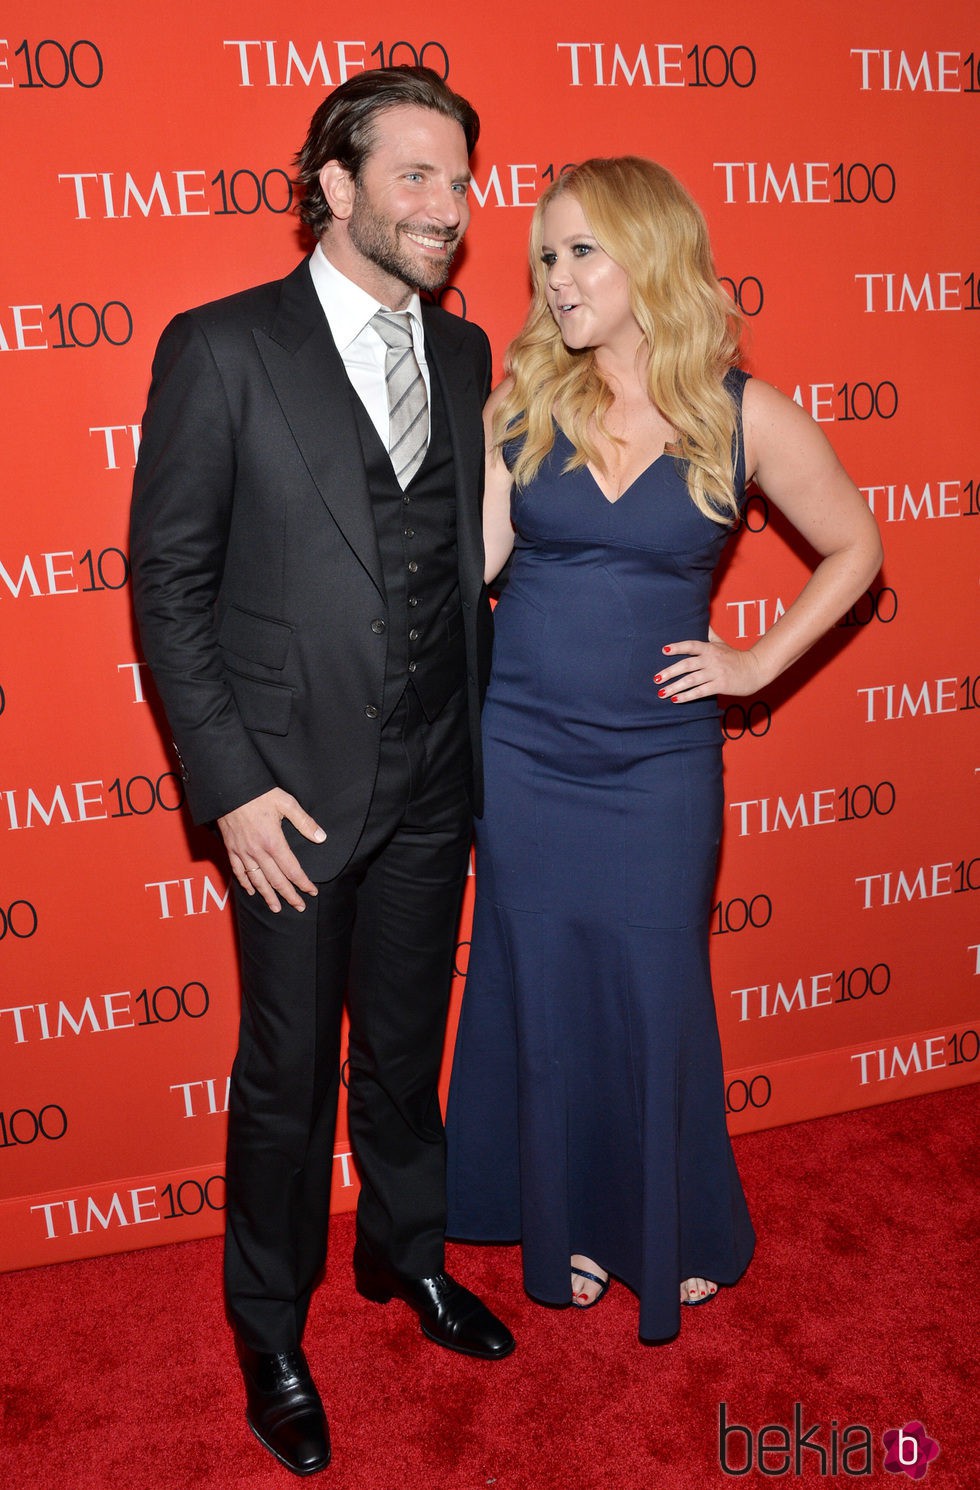 Bradley Cooper y Amy Schumer en la Gala Time de los 100 más influyentes de 2015